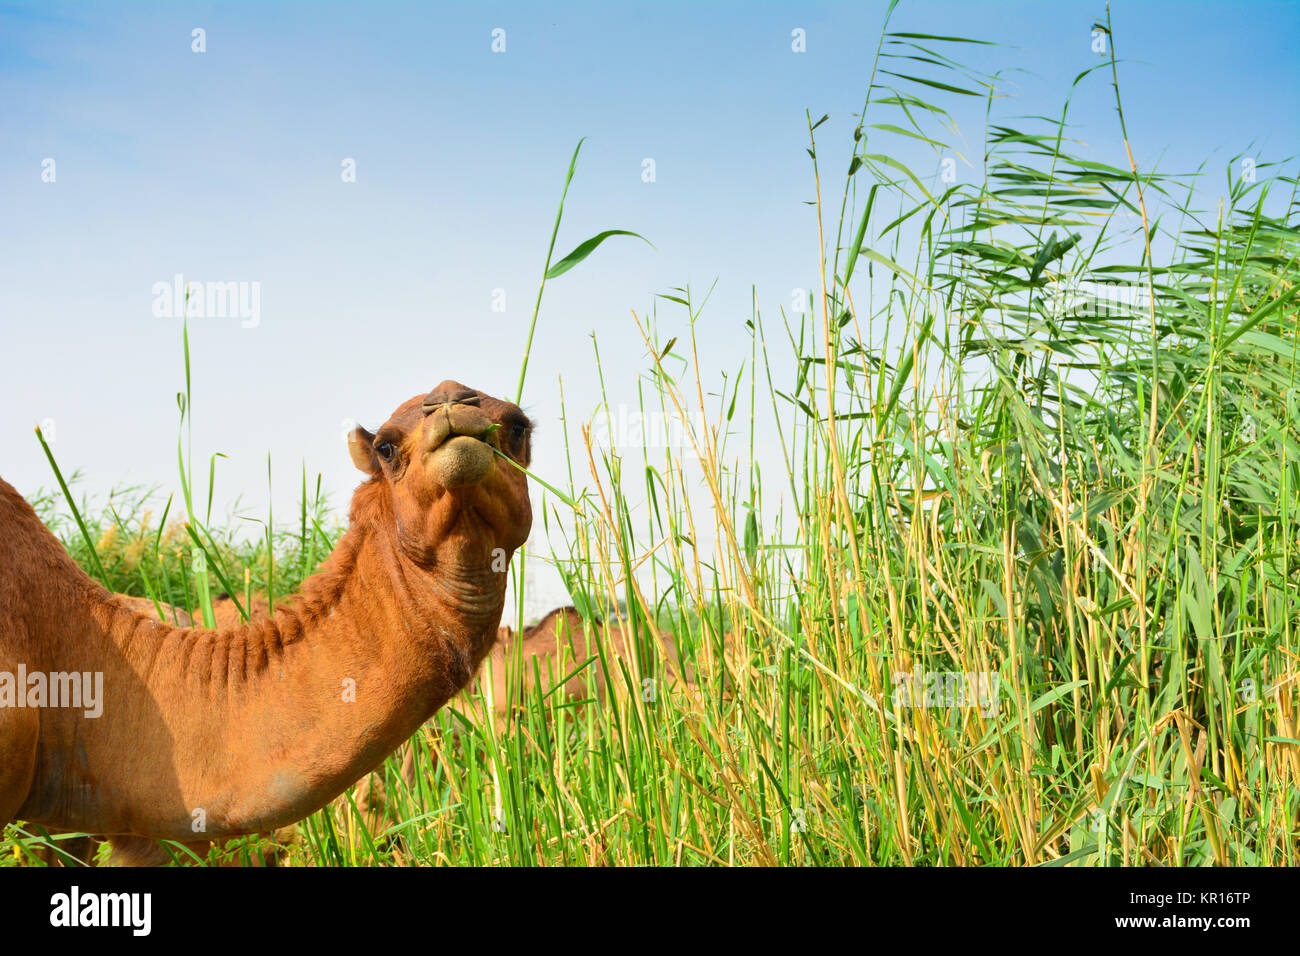 Camel eating grass closeup shot Stock Photo